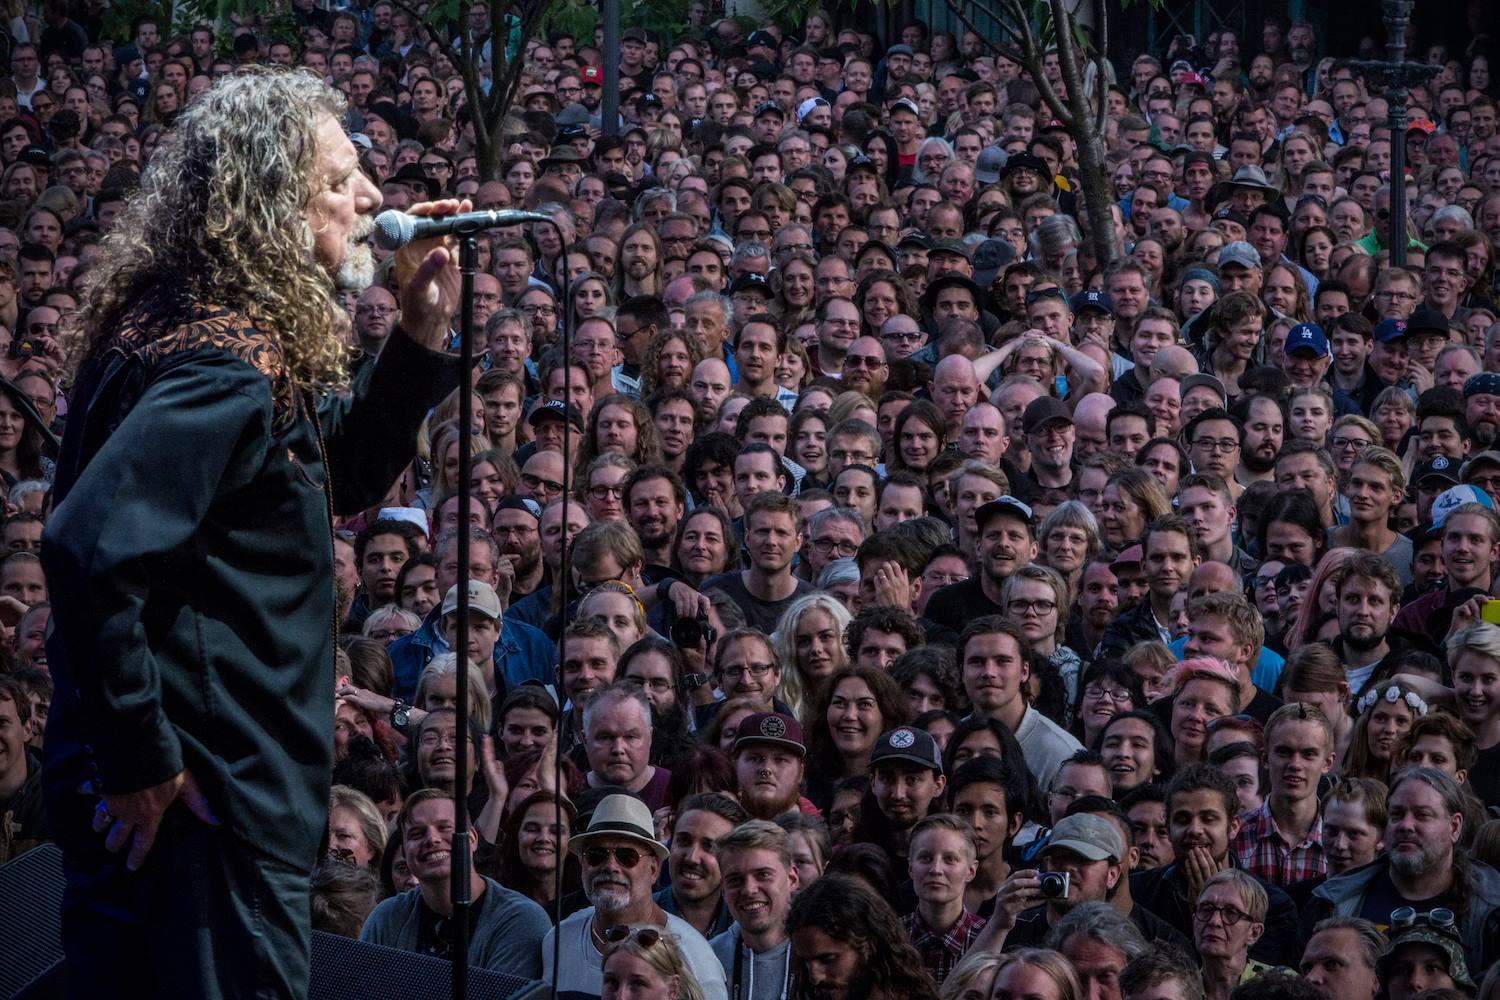 Robert Plant Announces 2016 US Tour Dates